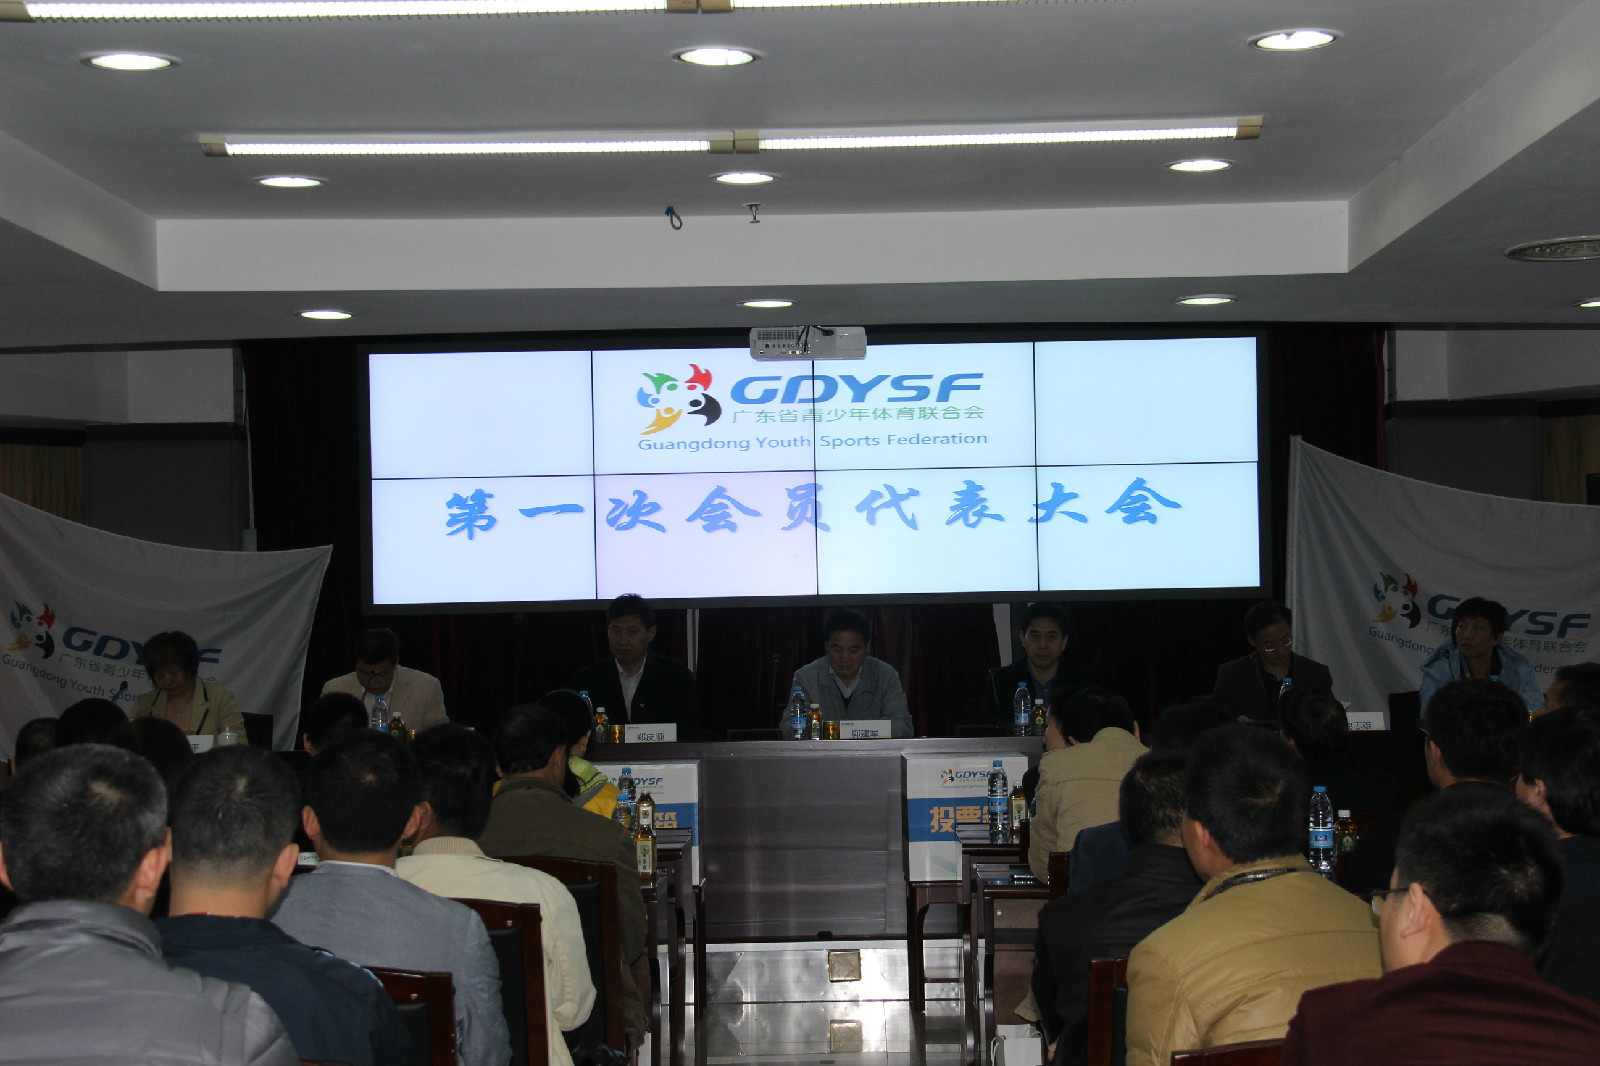 廣東省青少年體育聯合會第一次會議